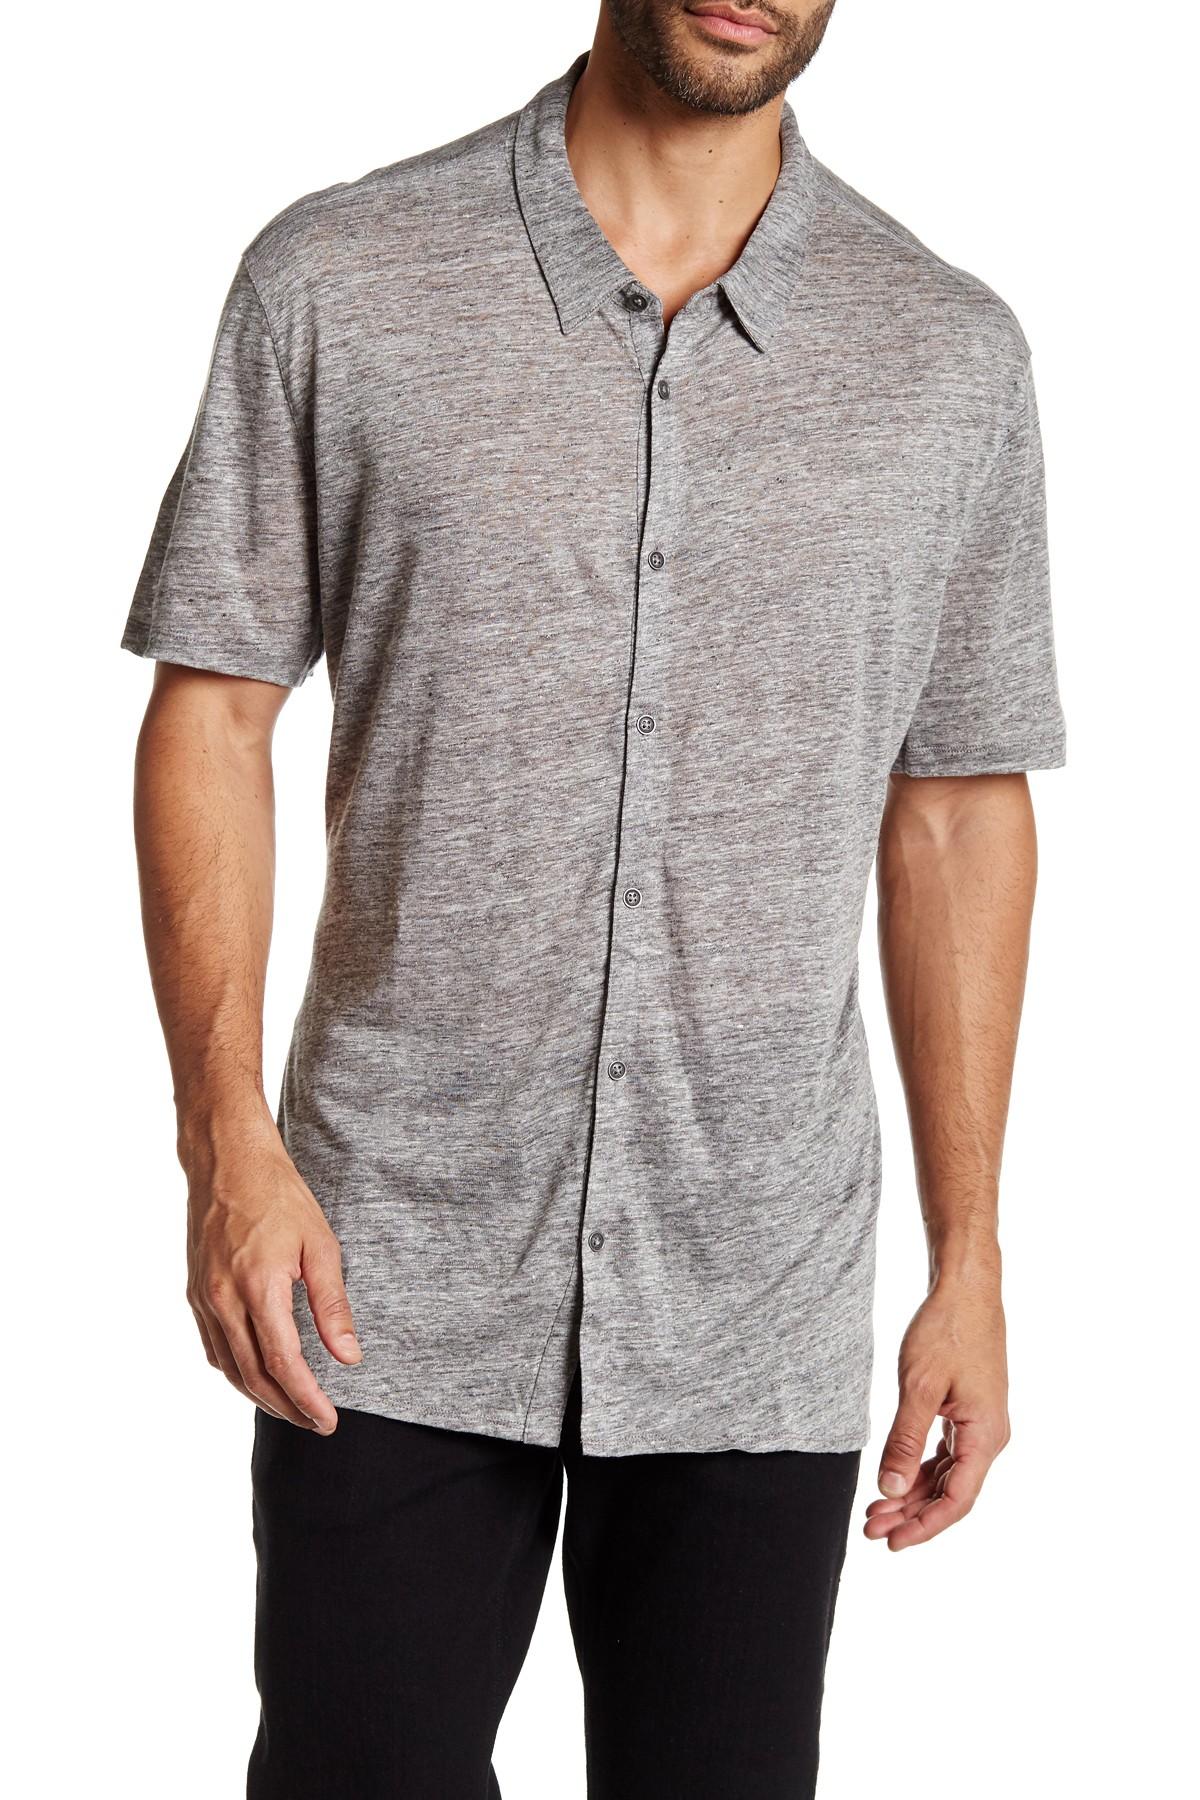 Lyst - John Varvatos Short Sleeve Button Front Linen Jersey Knit Shirt ...